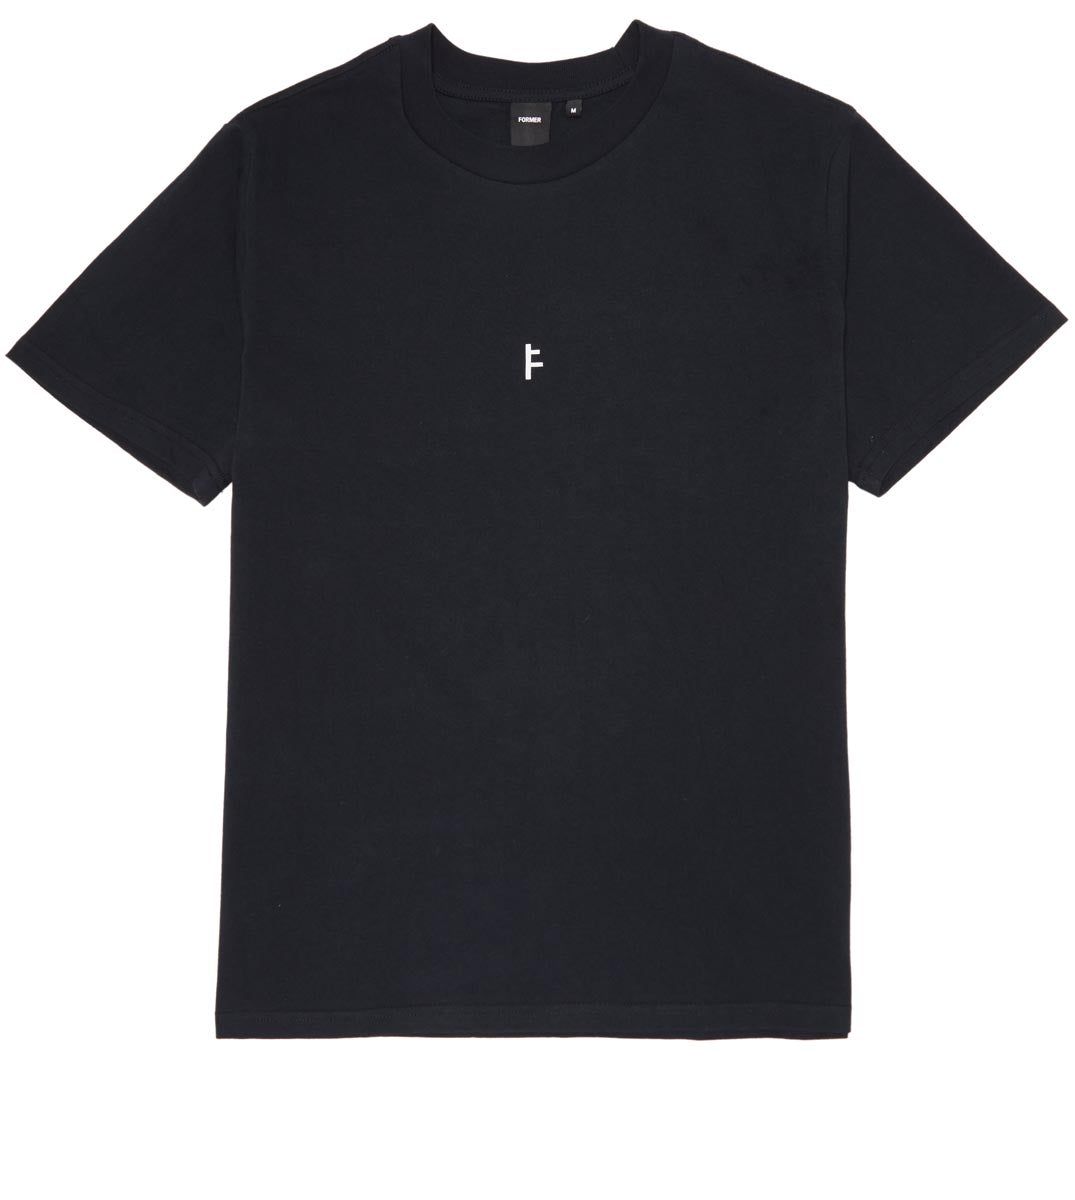 Former Press T-Shirt - Black image 2